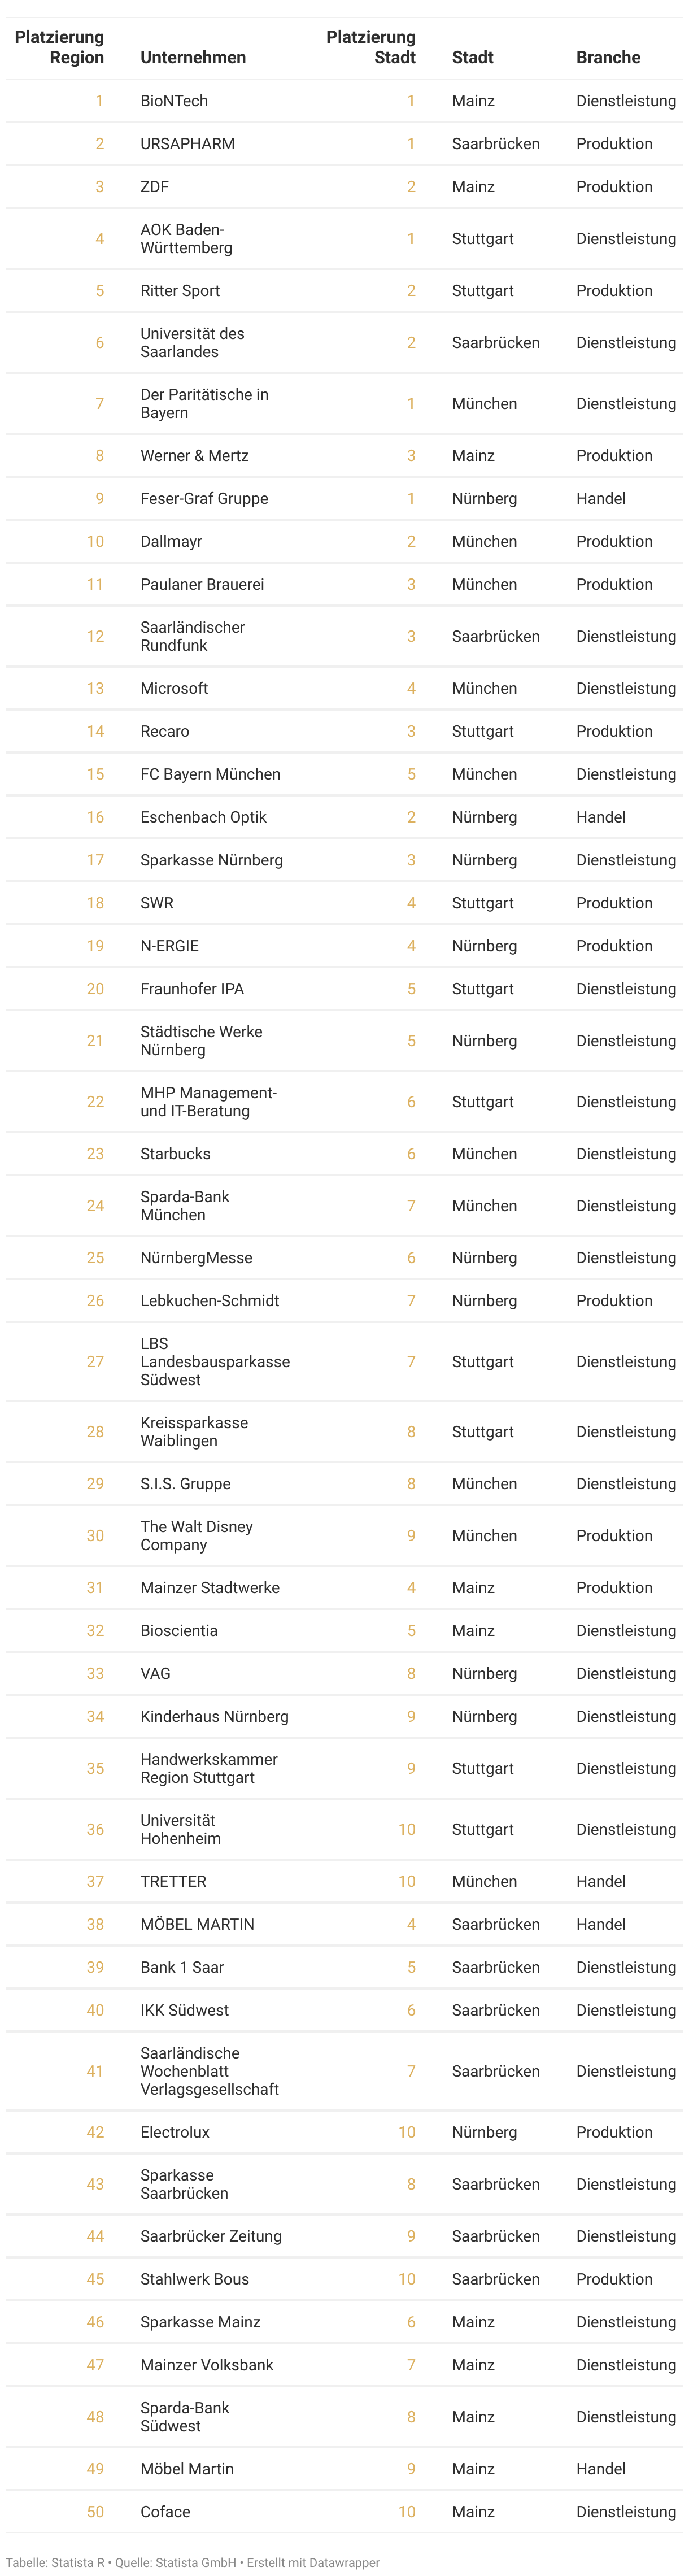 Rangliste der attraktivsten Arbeitgeber der Region Süddeutschland des Jahres 2023